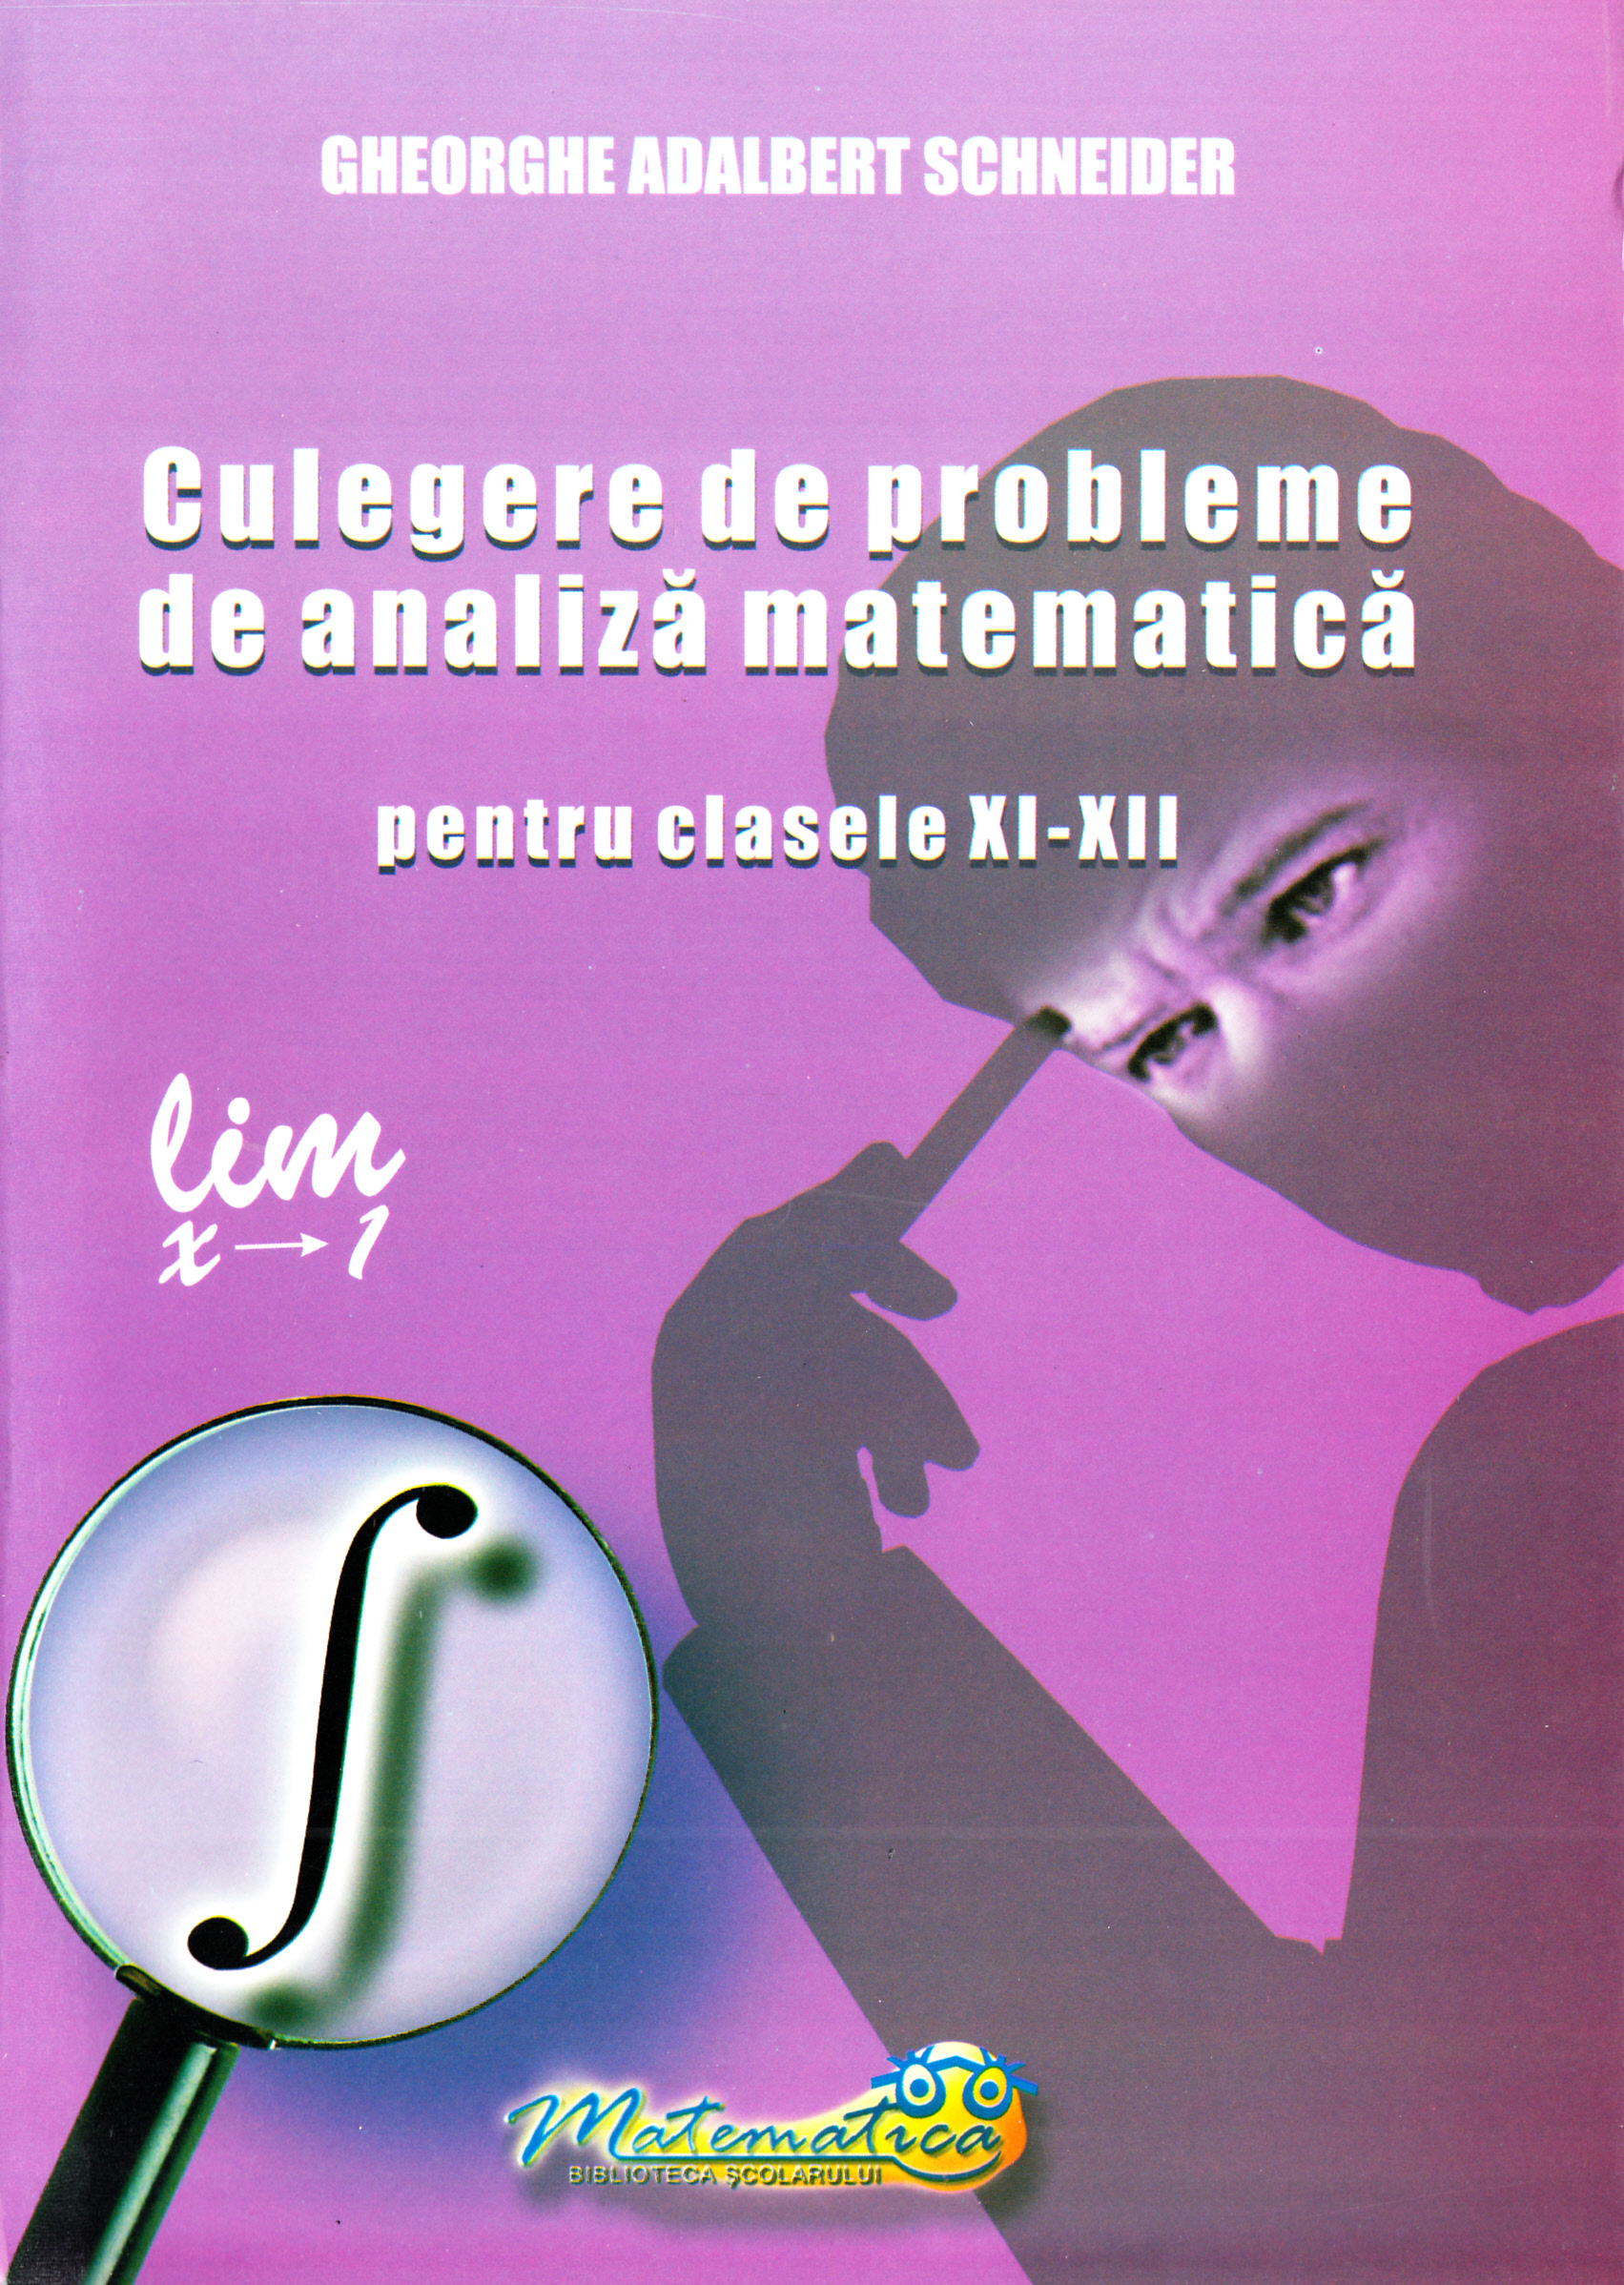 Culegere de probleme de analiza matematica - Clasele 9-12 - Gheorghe Adalbert Schneider